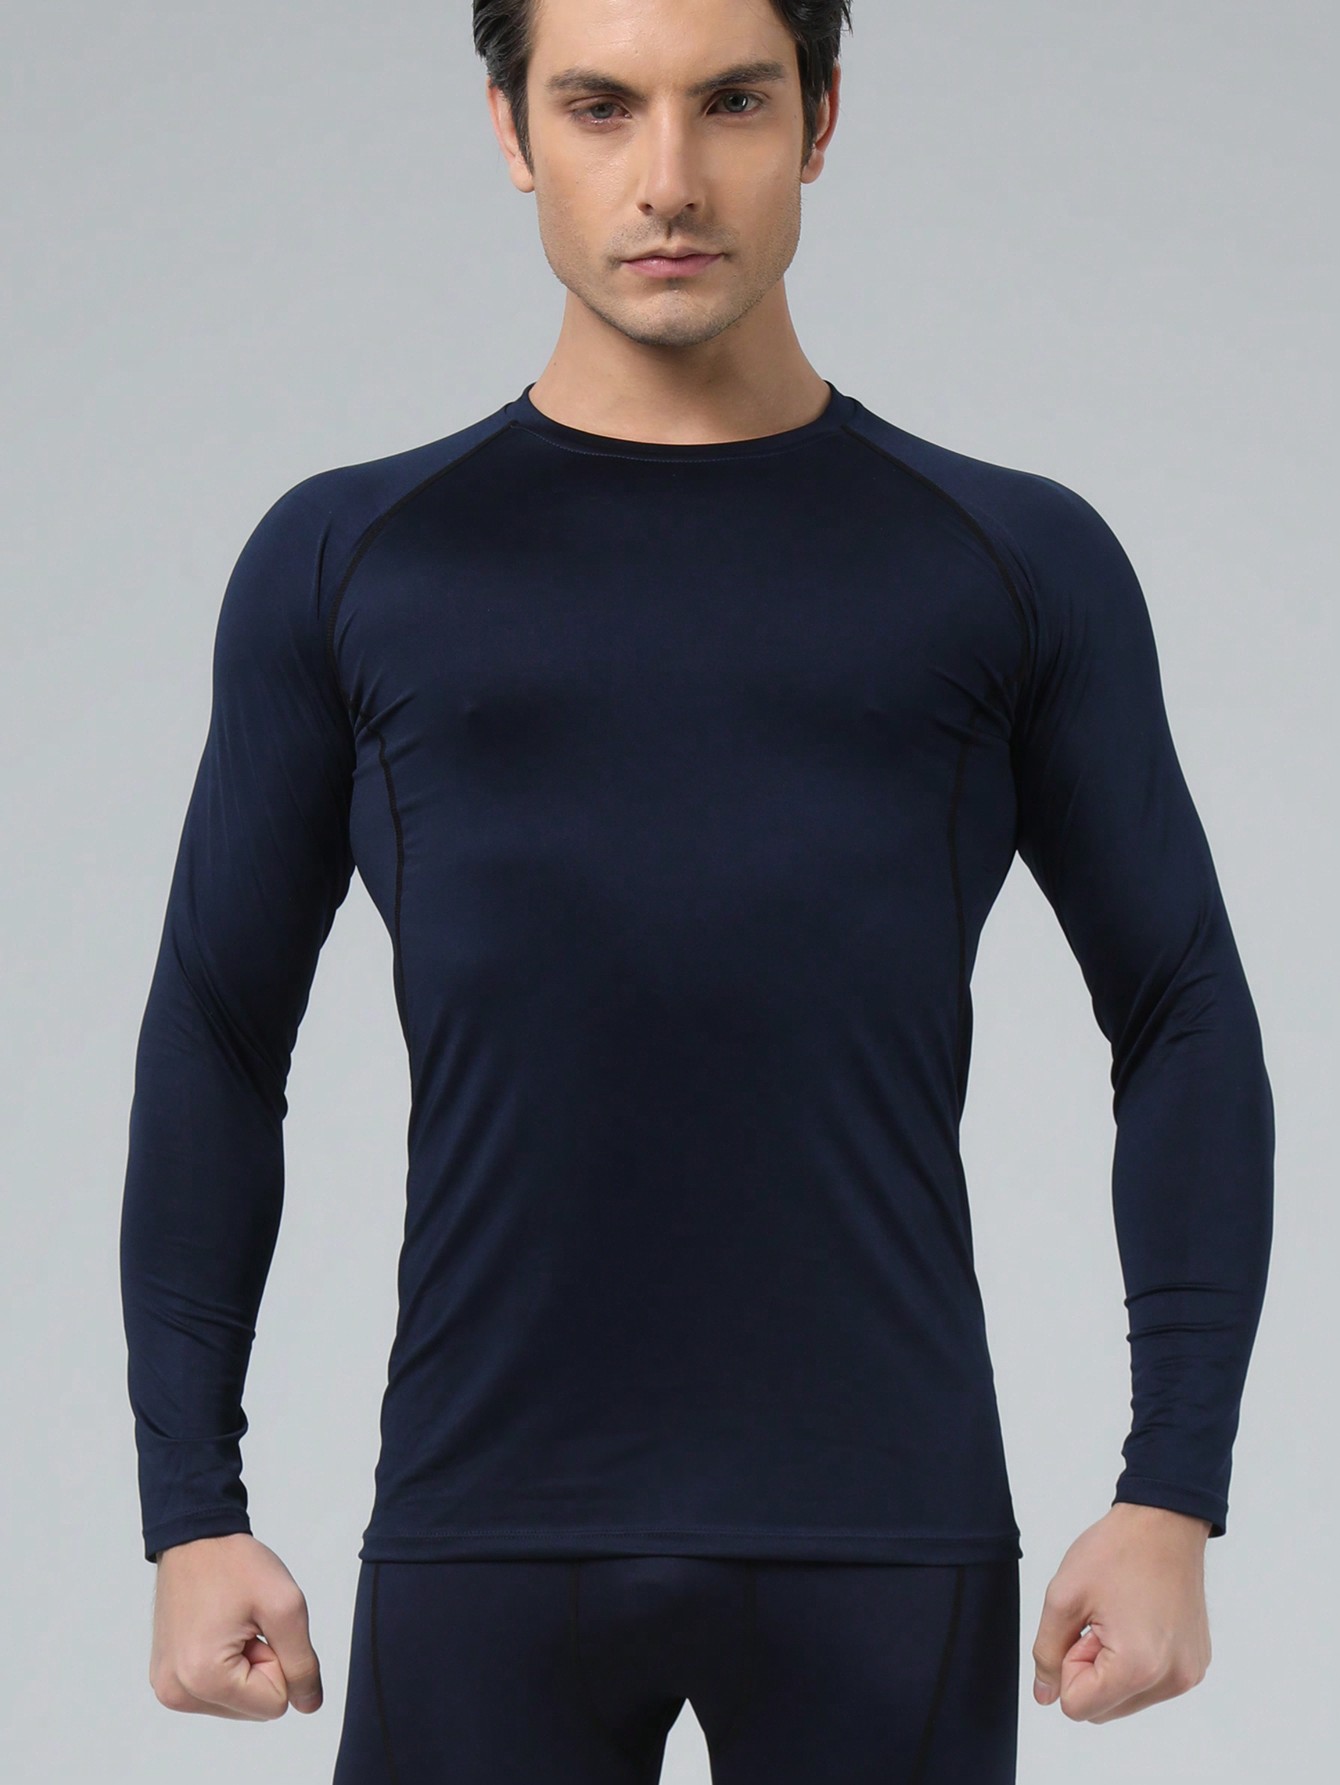 Мужская эластичная компрессионная рубашка для фитнеса с длинными рукавами, темно-синий